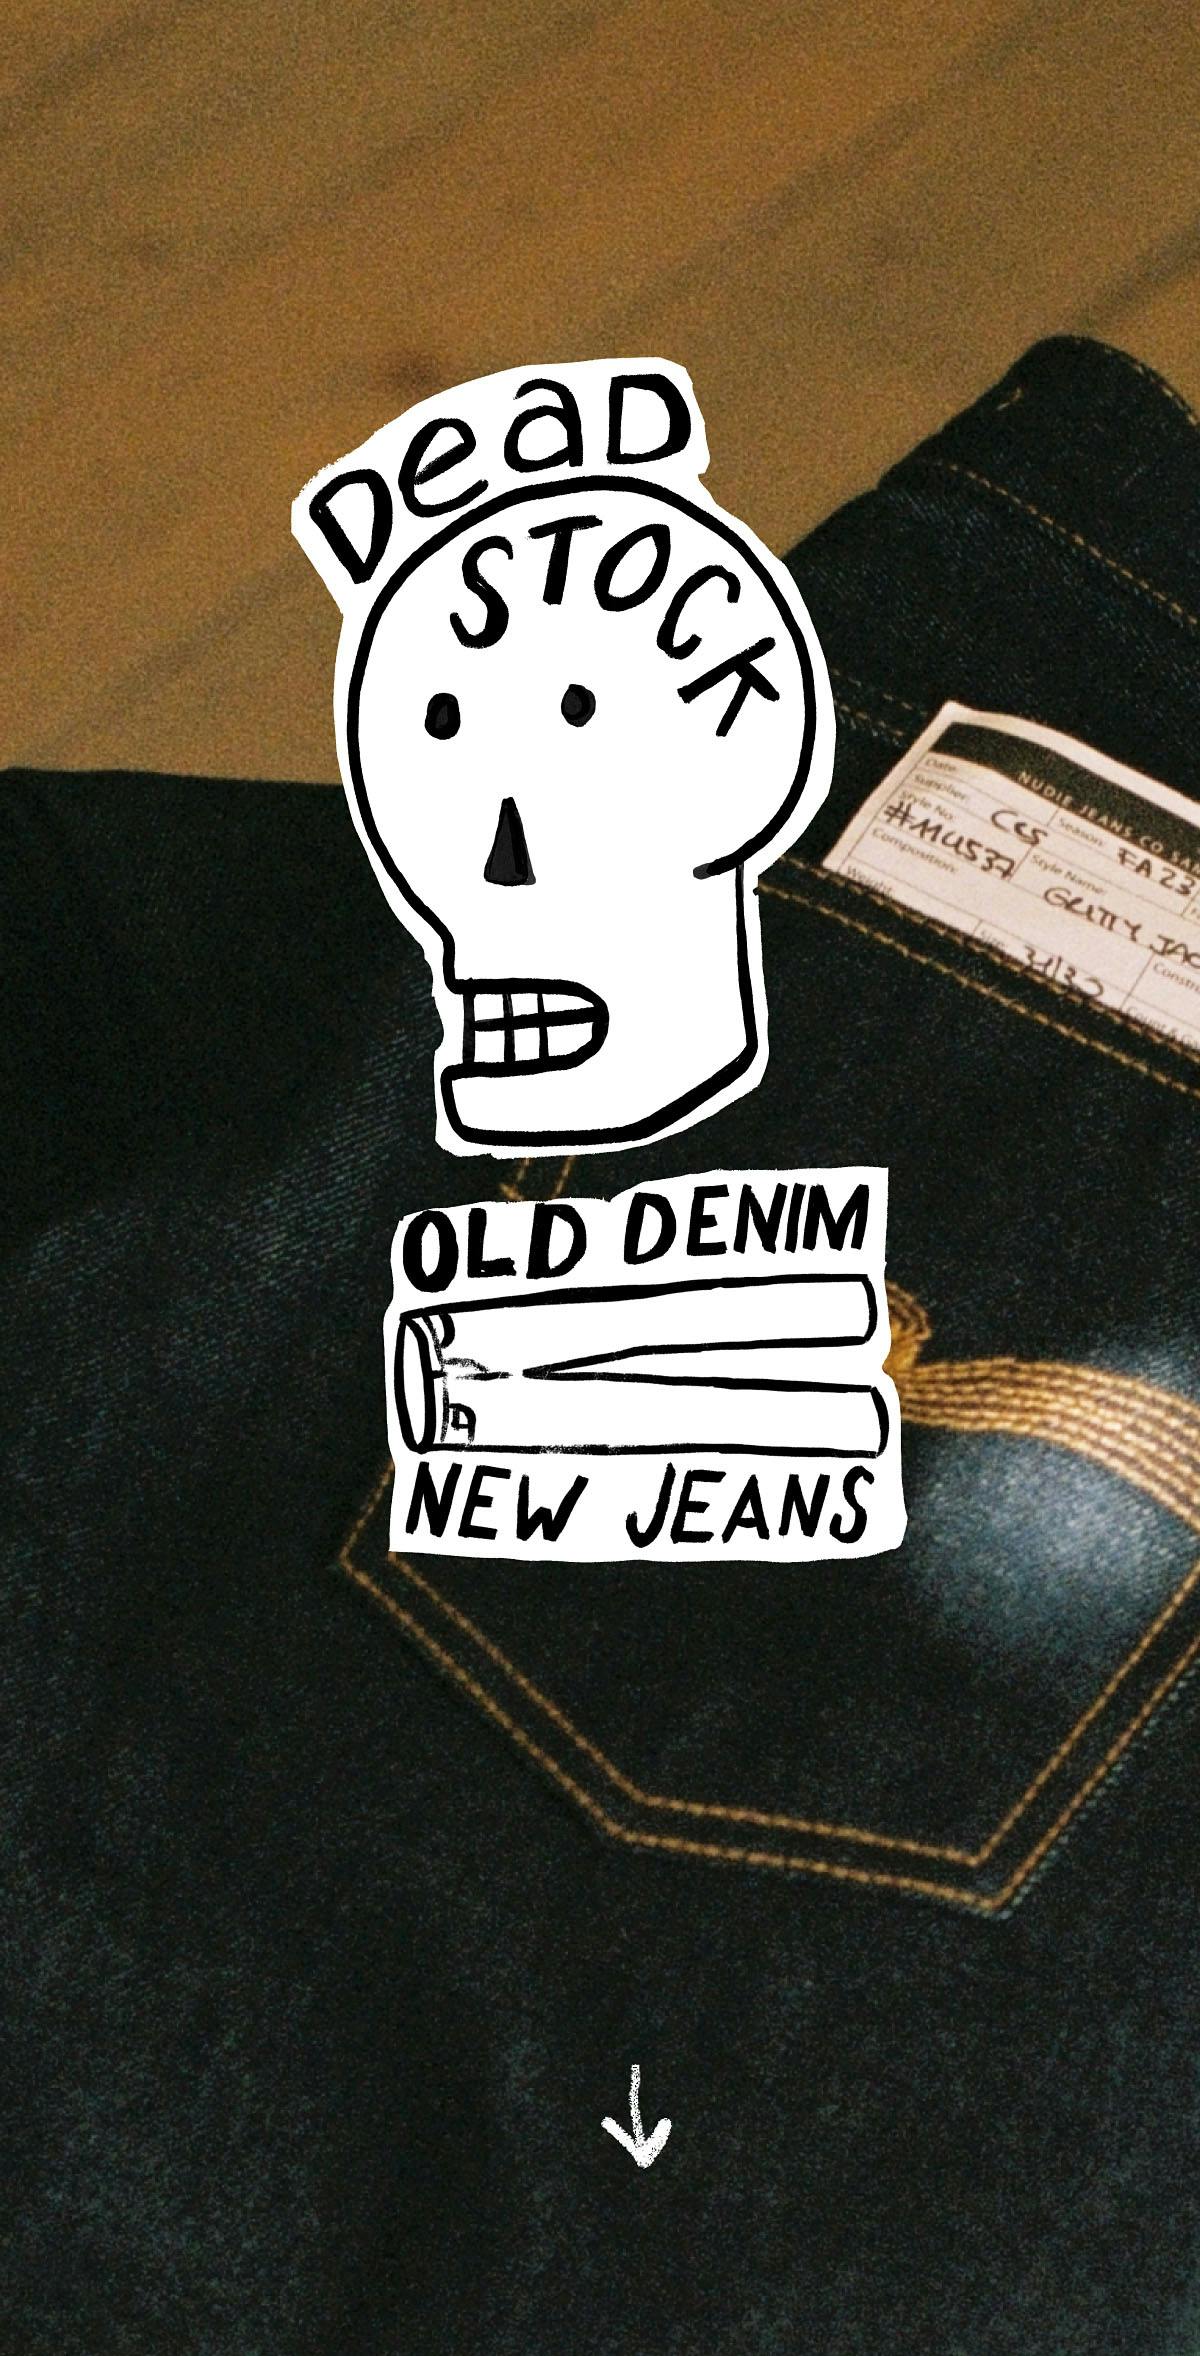 Deadstock Old denim new jeans